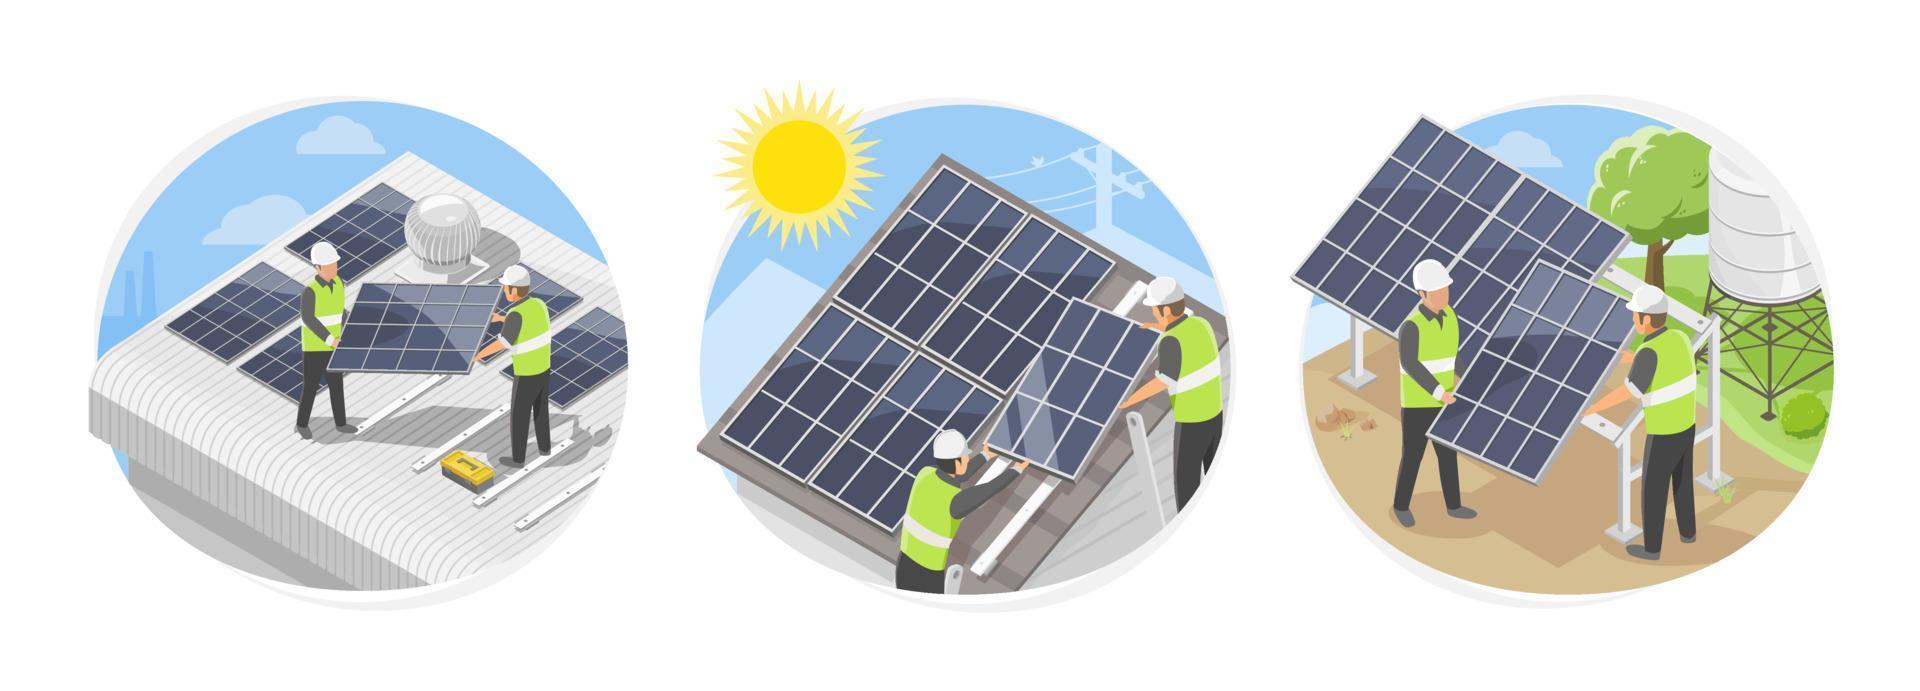 sol- cell tak topp installation team service symboler begrepp för fabrik lager hus och bruka installatören ekologi grön kraft isometrisk isolera vektor